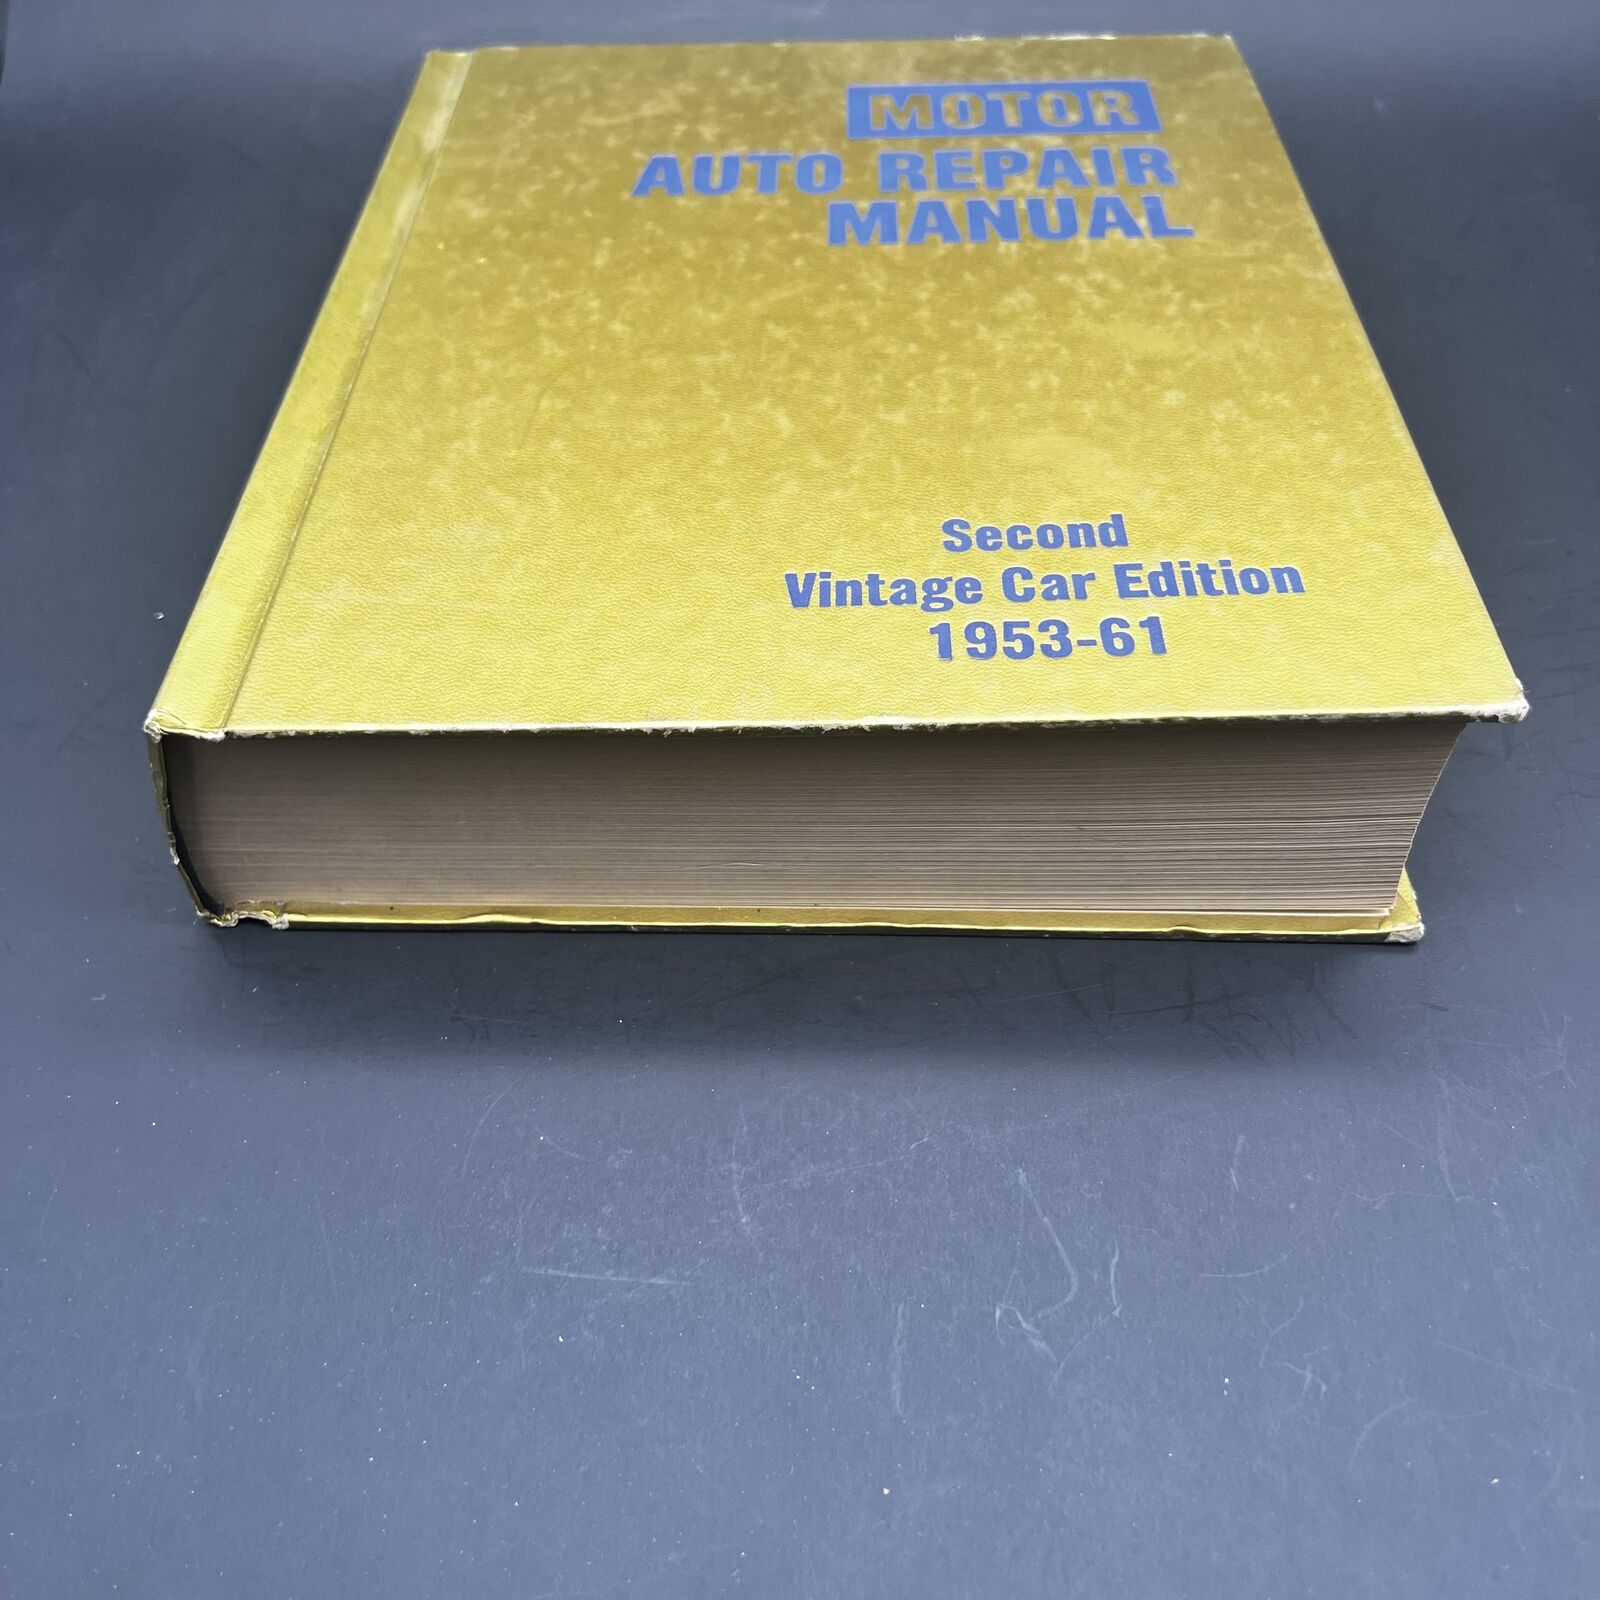 Motor Auto Repair Manual Second Vintage Car Edition 1953 - 1961